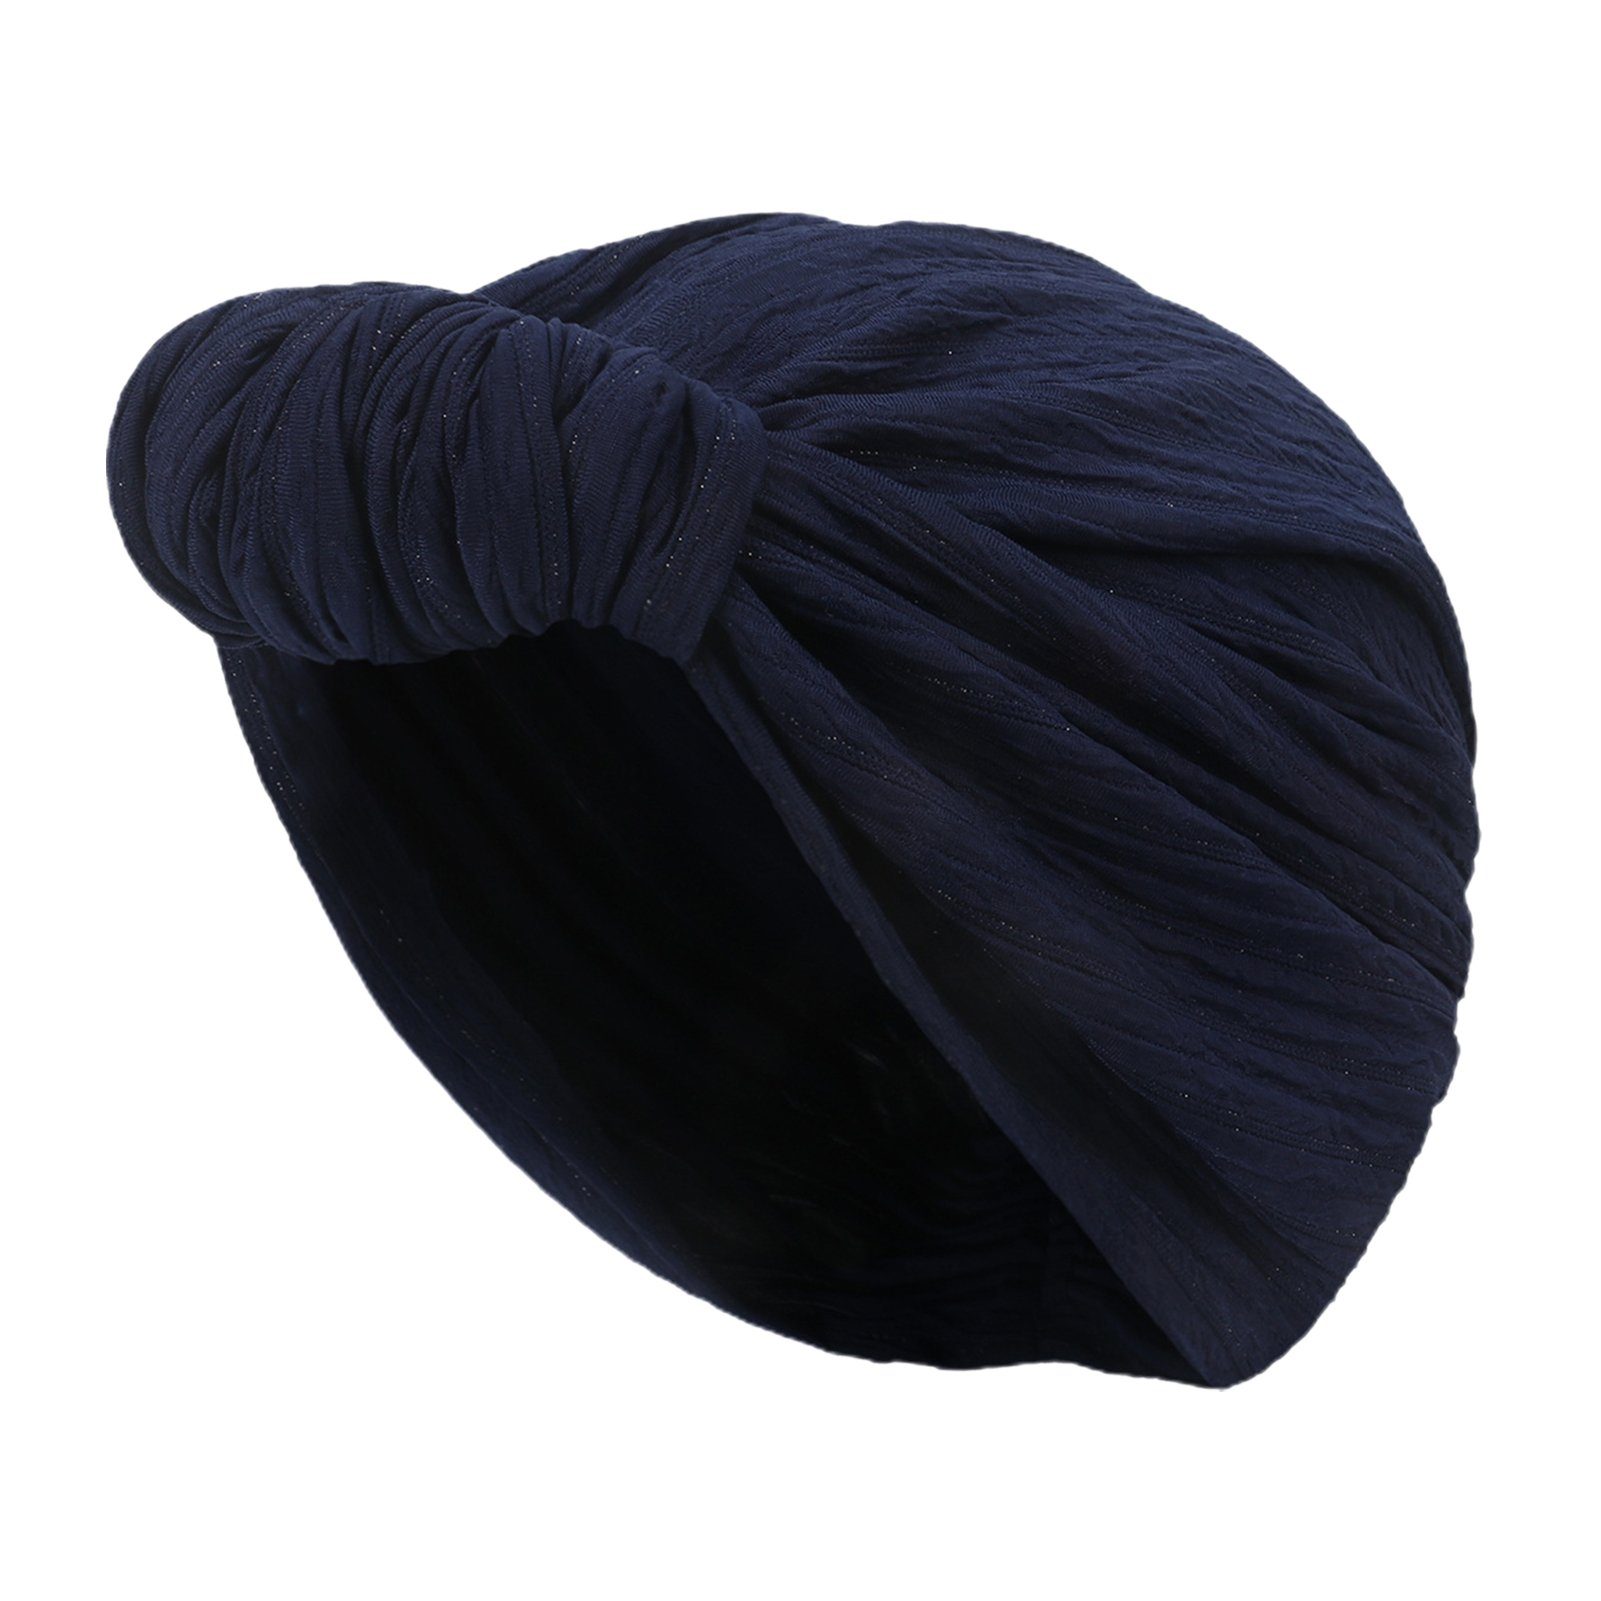 hellgrau Baumwolle, Stirnband Für Elastische Damen, Knotenmütze, Modische Stirnband Mütze Blusmart